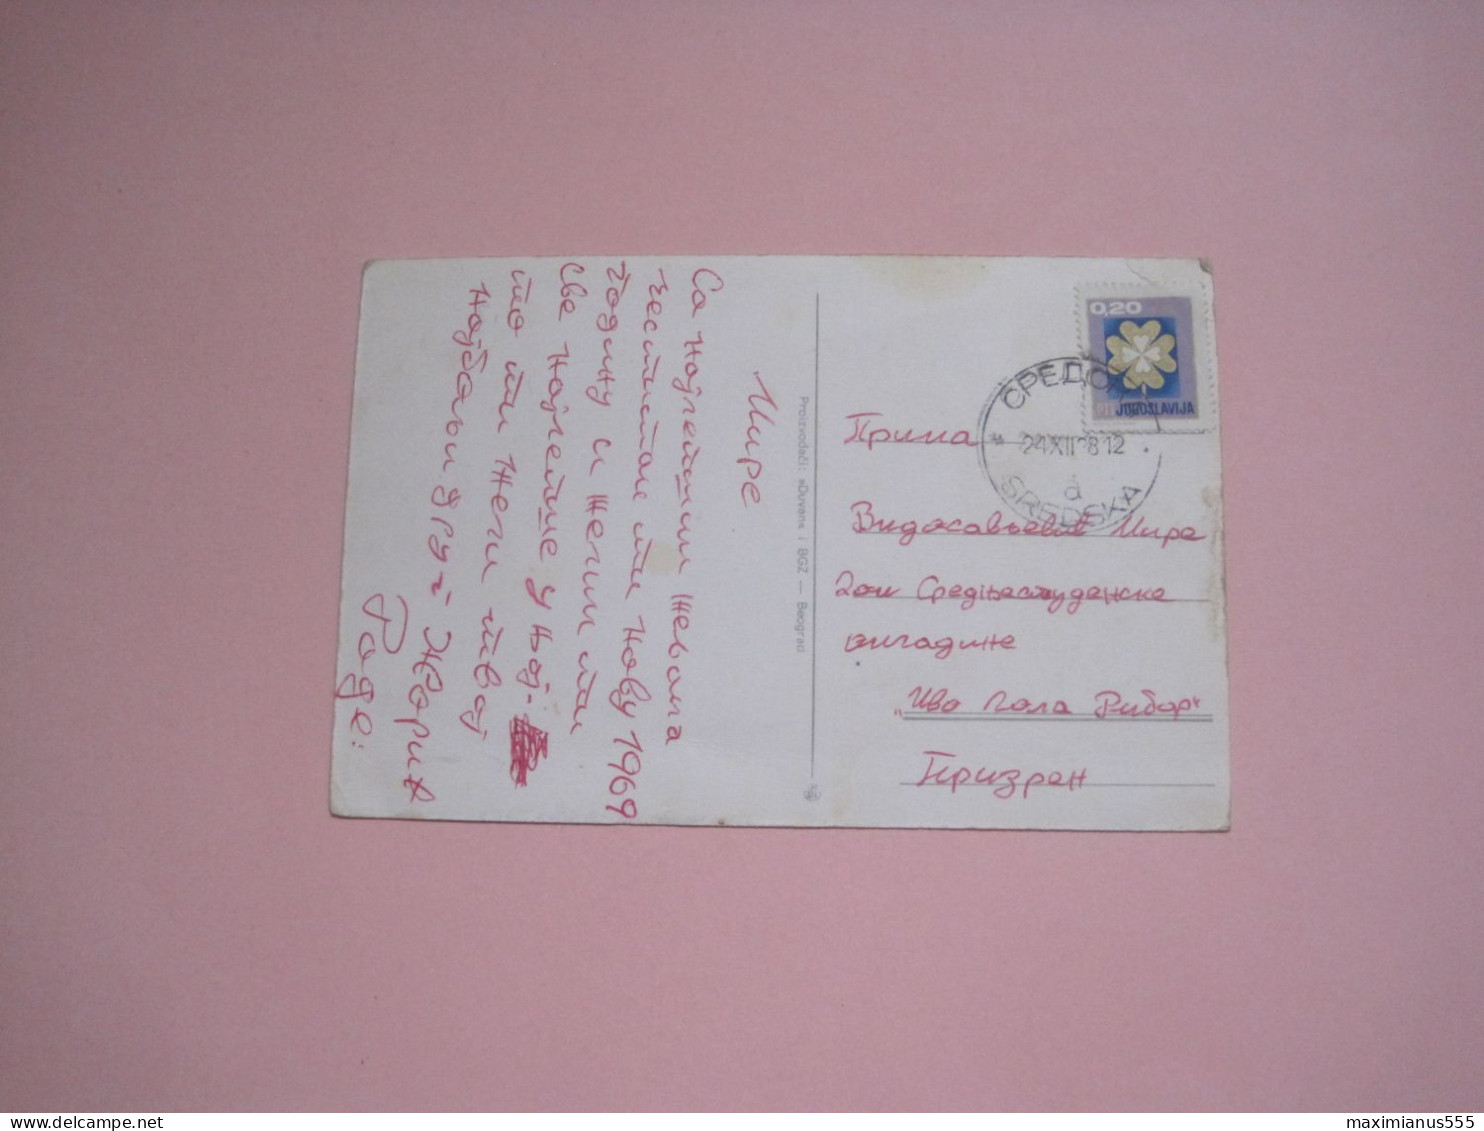 Postcard Sent From City Of Prizren To Sredska 1986, Ex Yugoslavia - Kosovo